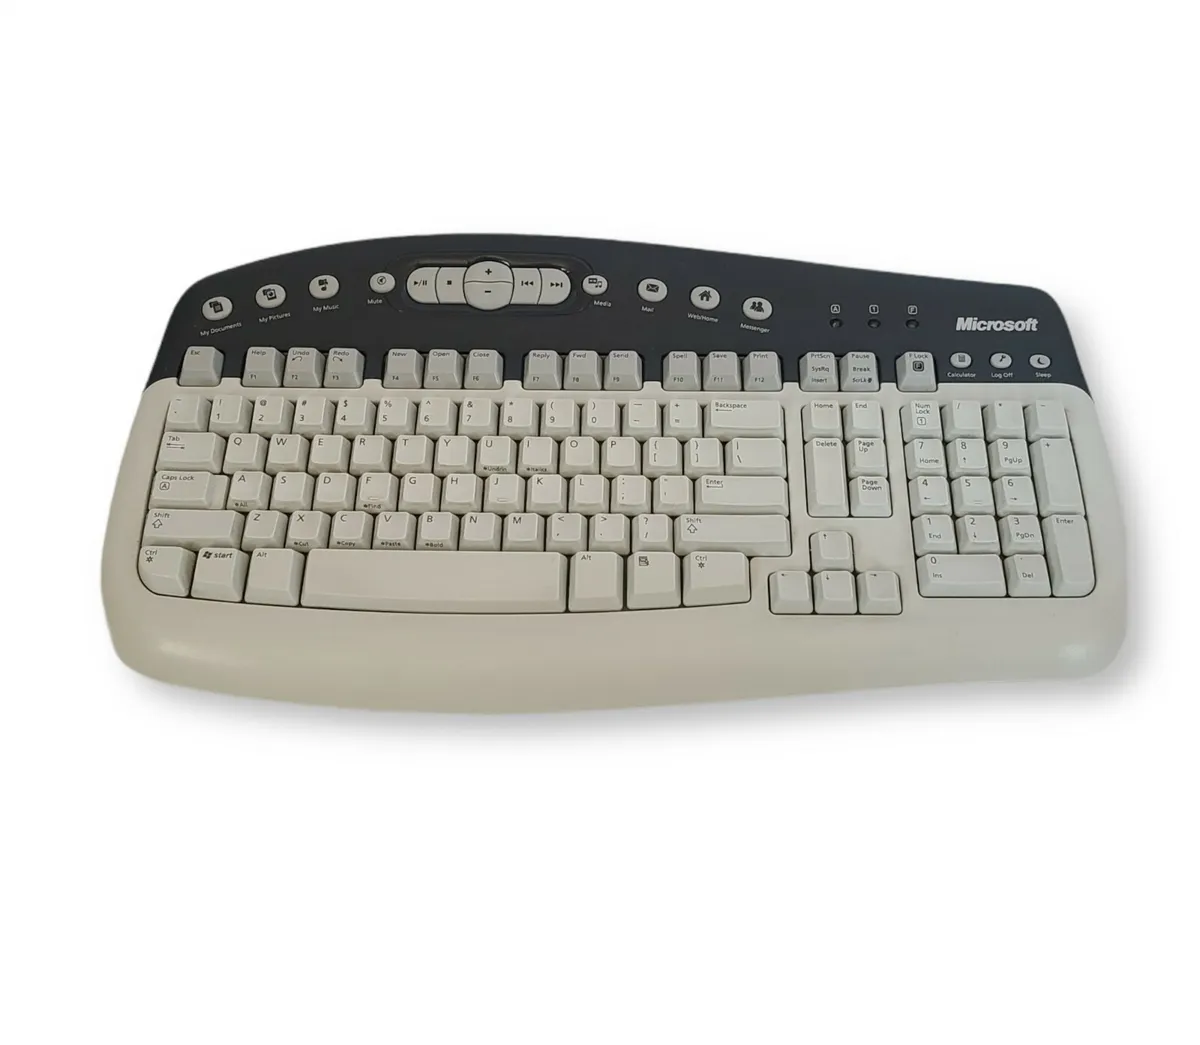 MultiMedia Keyboard